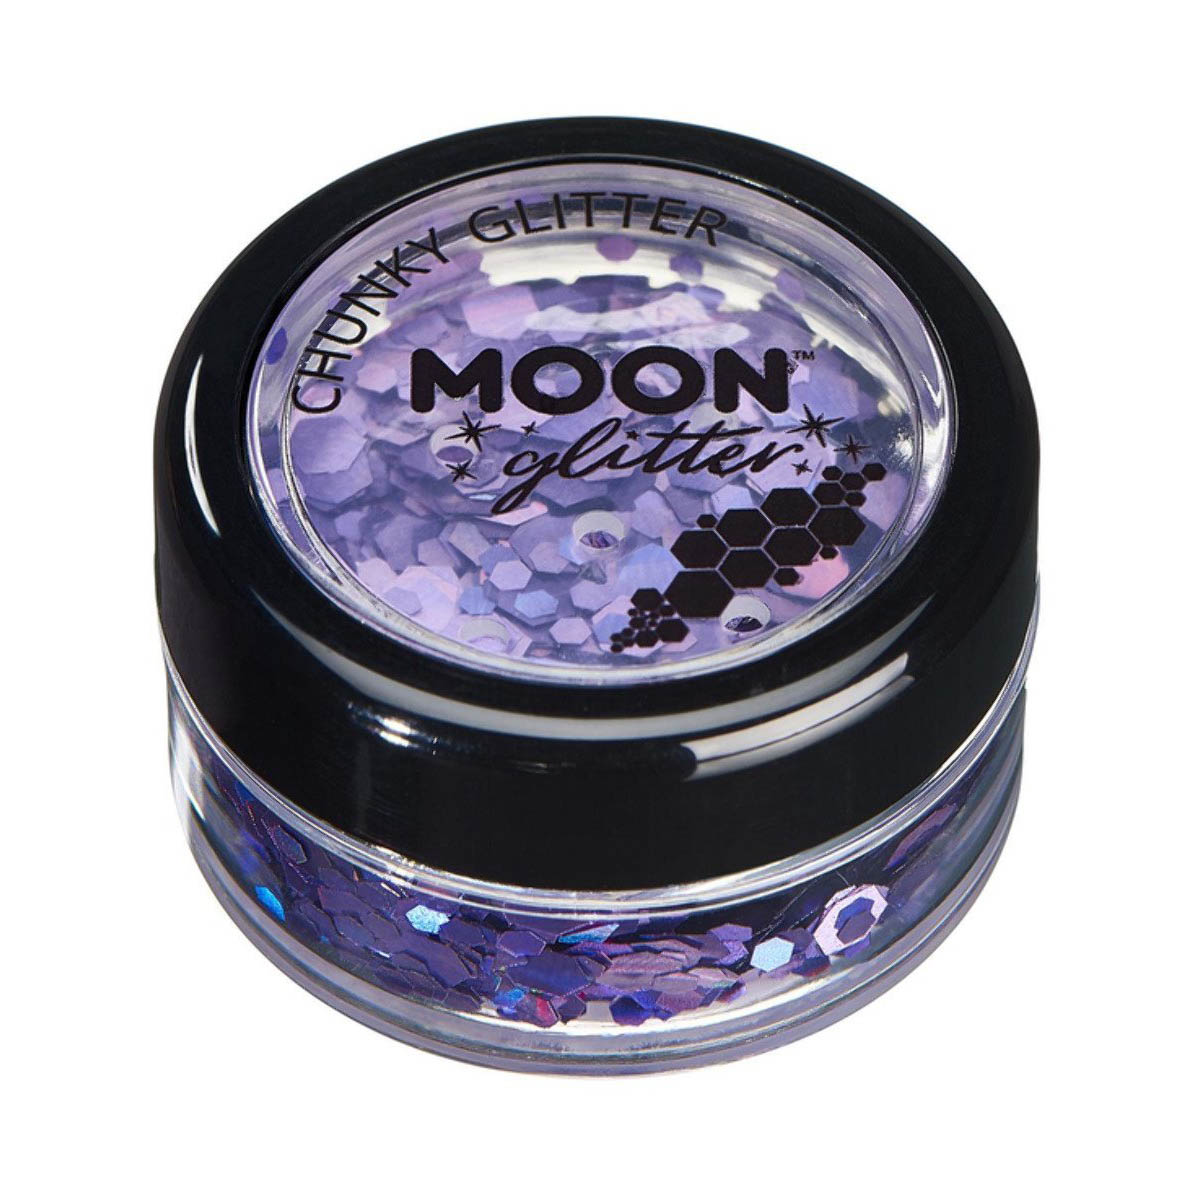 Läs mer om Moon glitter i burk, chunky holografisk 3g Lila